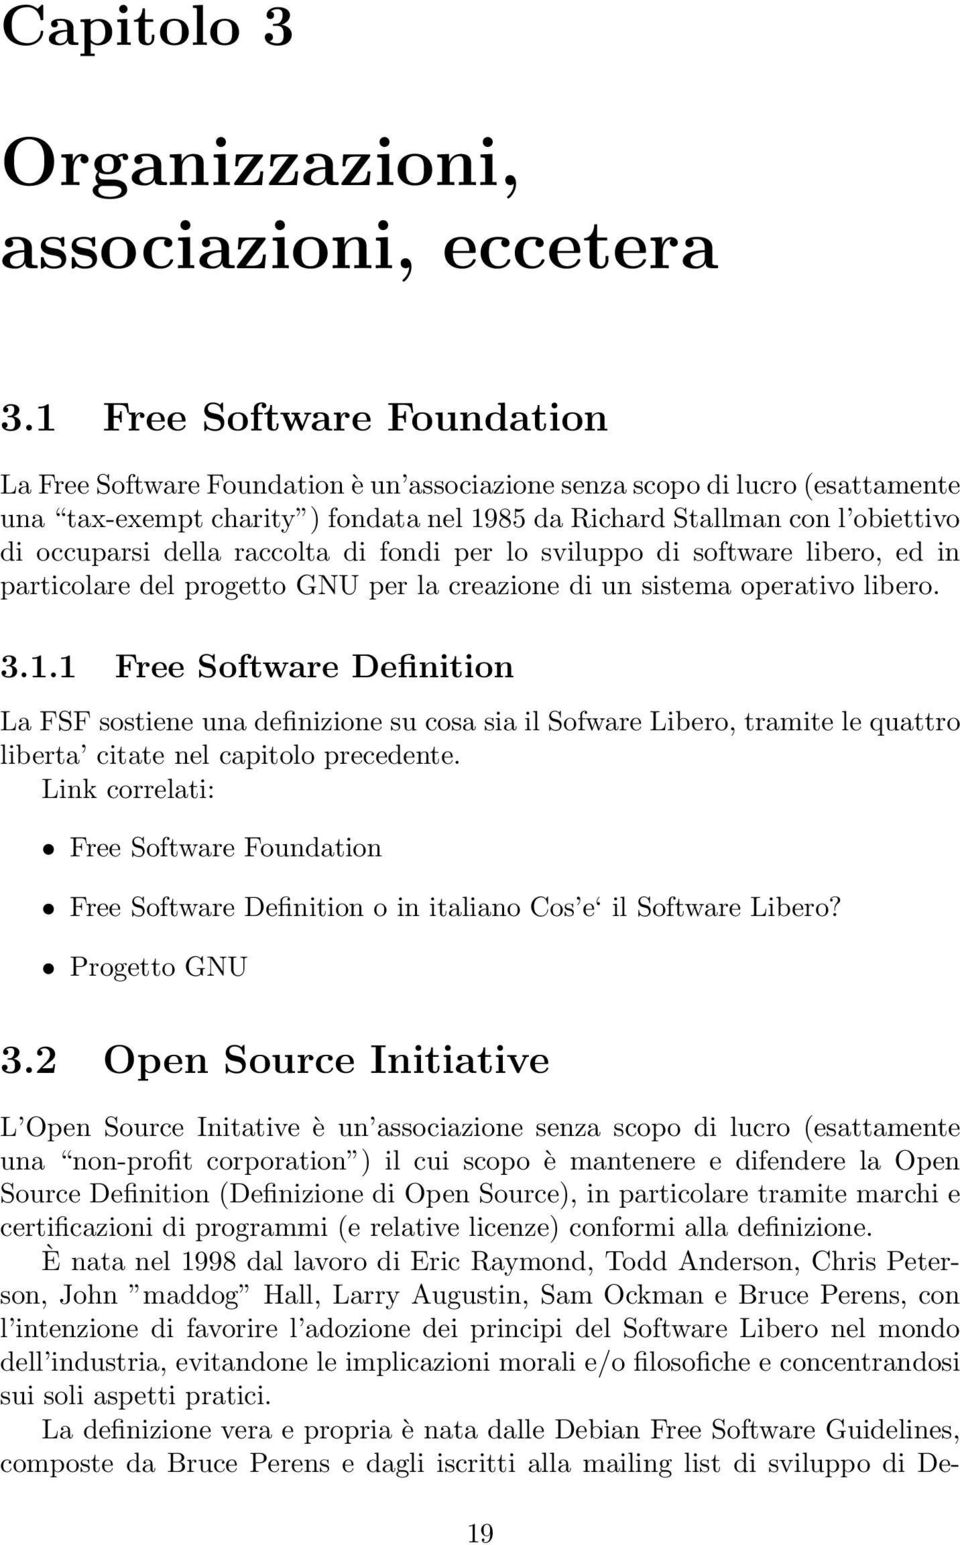 della raccolta di fondi per lo sviluppo di software libero, ed in particolare del progetto GNU per la creazione di un sistema operativo libero. 3.1.